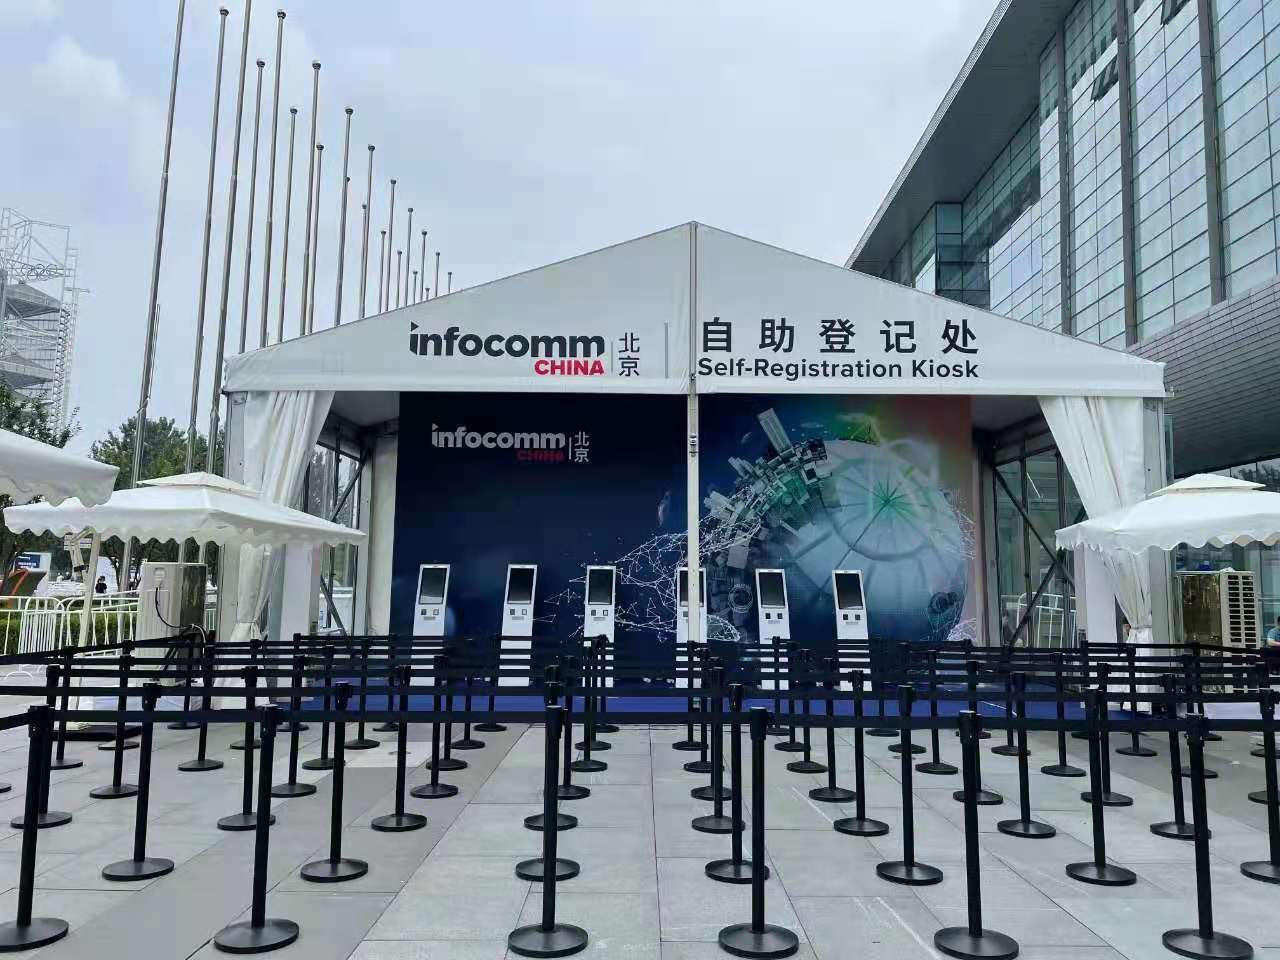 直击现场| 哲闻科技携手铁三角重磅亮相“InfoComm China 2021展”，精彩盛况先睹为快！(图1)